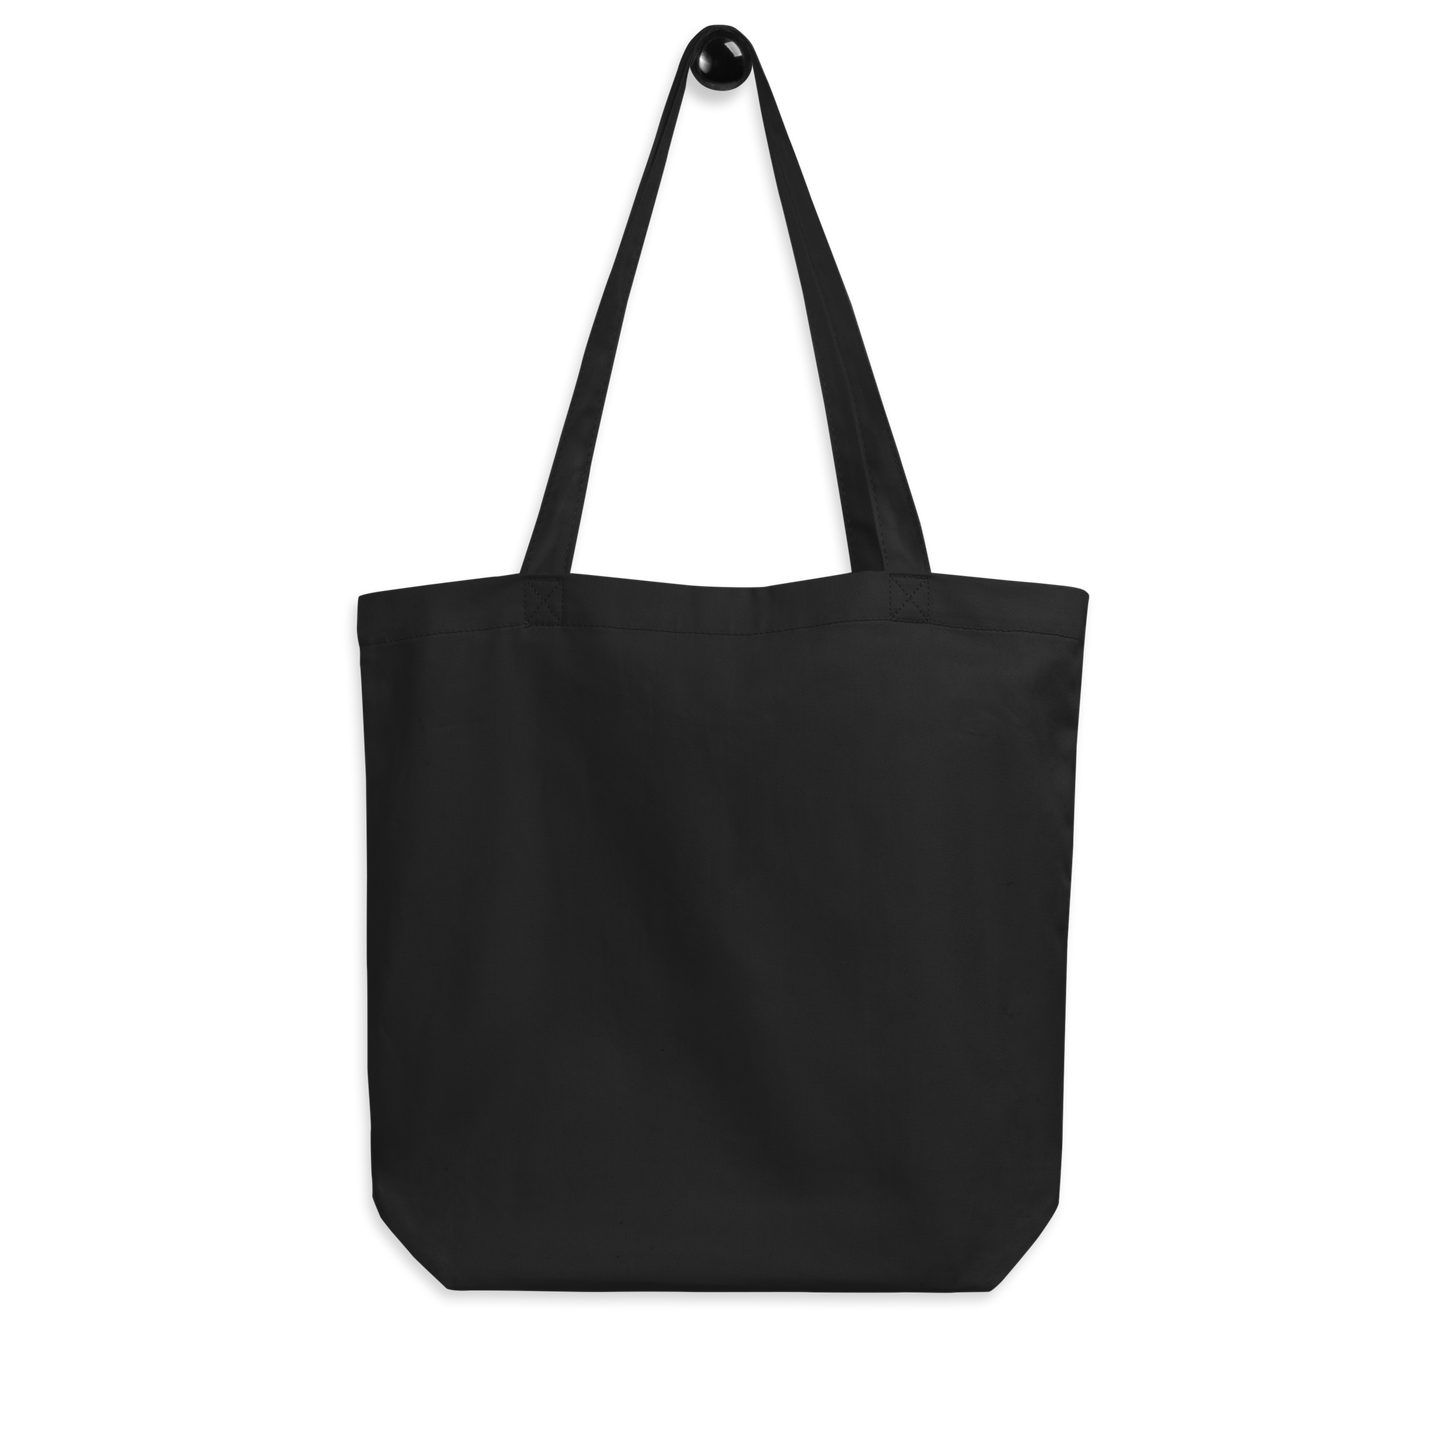 HAMLET Tote Bag (Black)